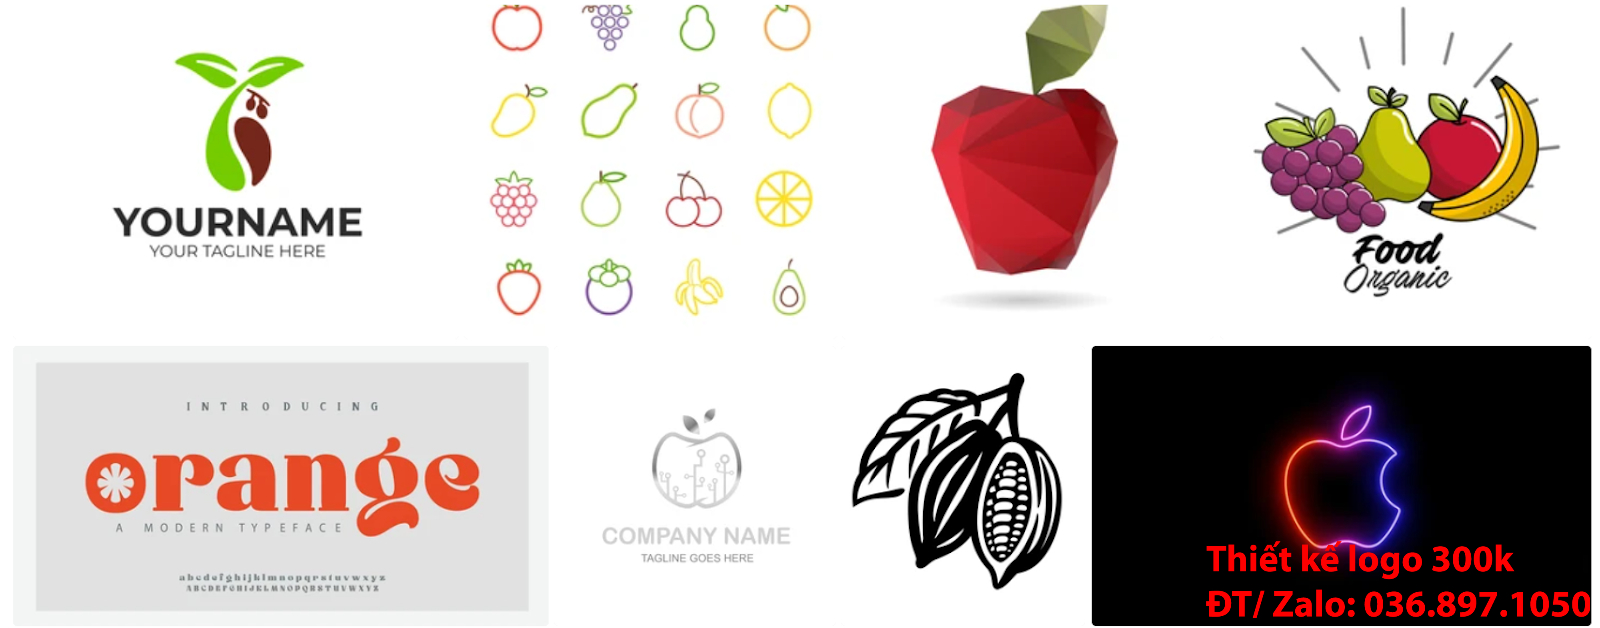 Công ty cung cấp dịch vụ tạo Mẫu logo trái cây đơn giản tinh tế giá rẻ uy tín chất lượng 500k